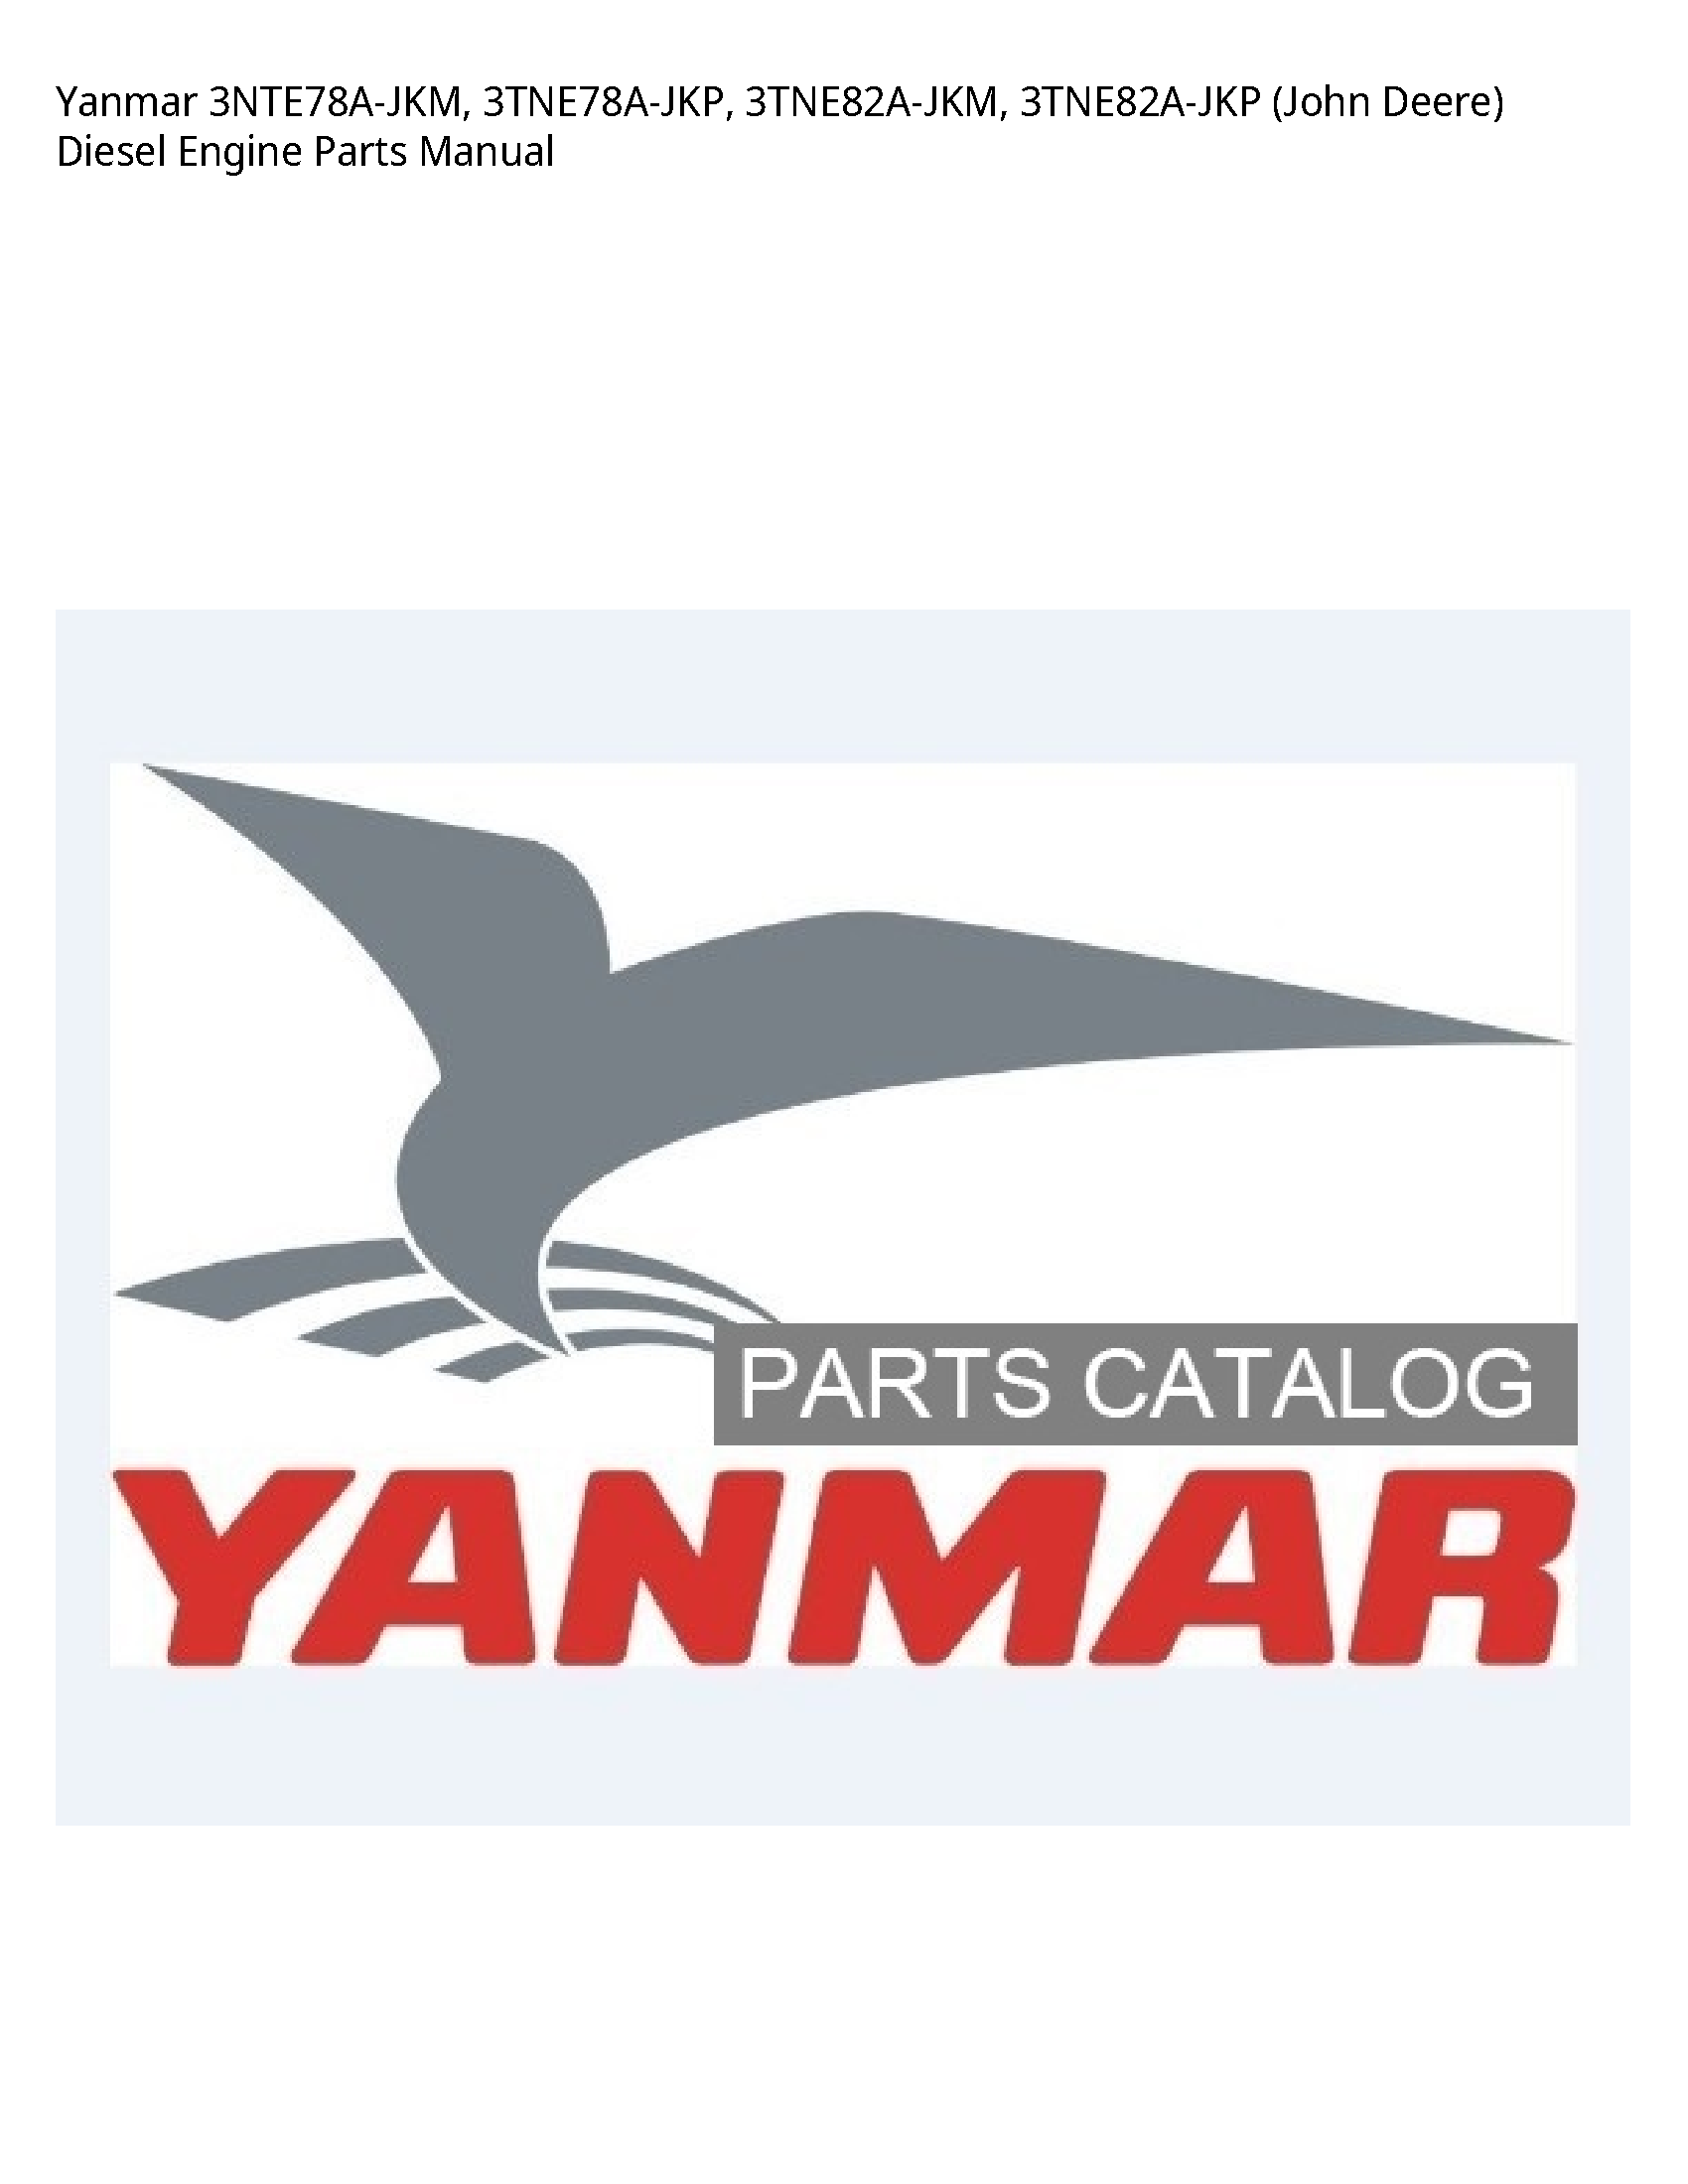 Yanmar 3NTE78A-JKM (John Deere) Diesel Engine Parts manual